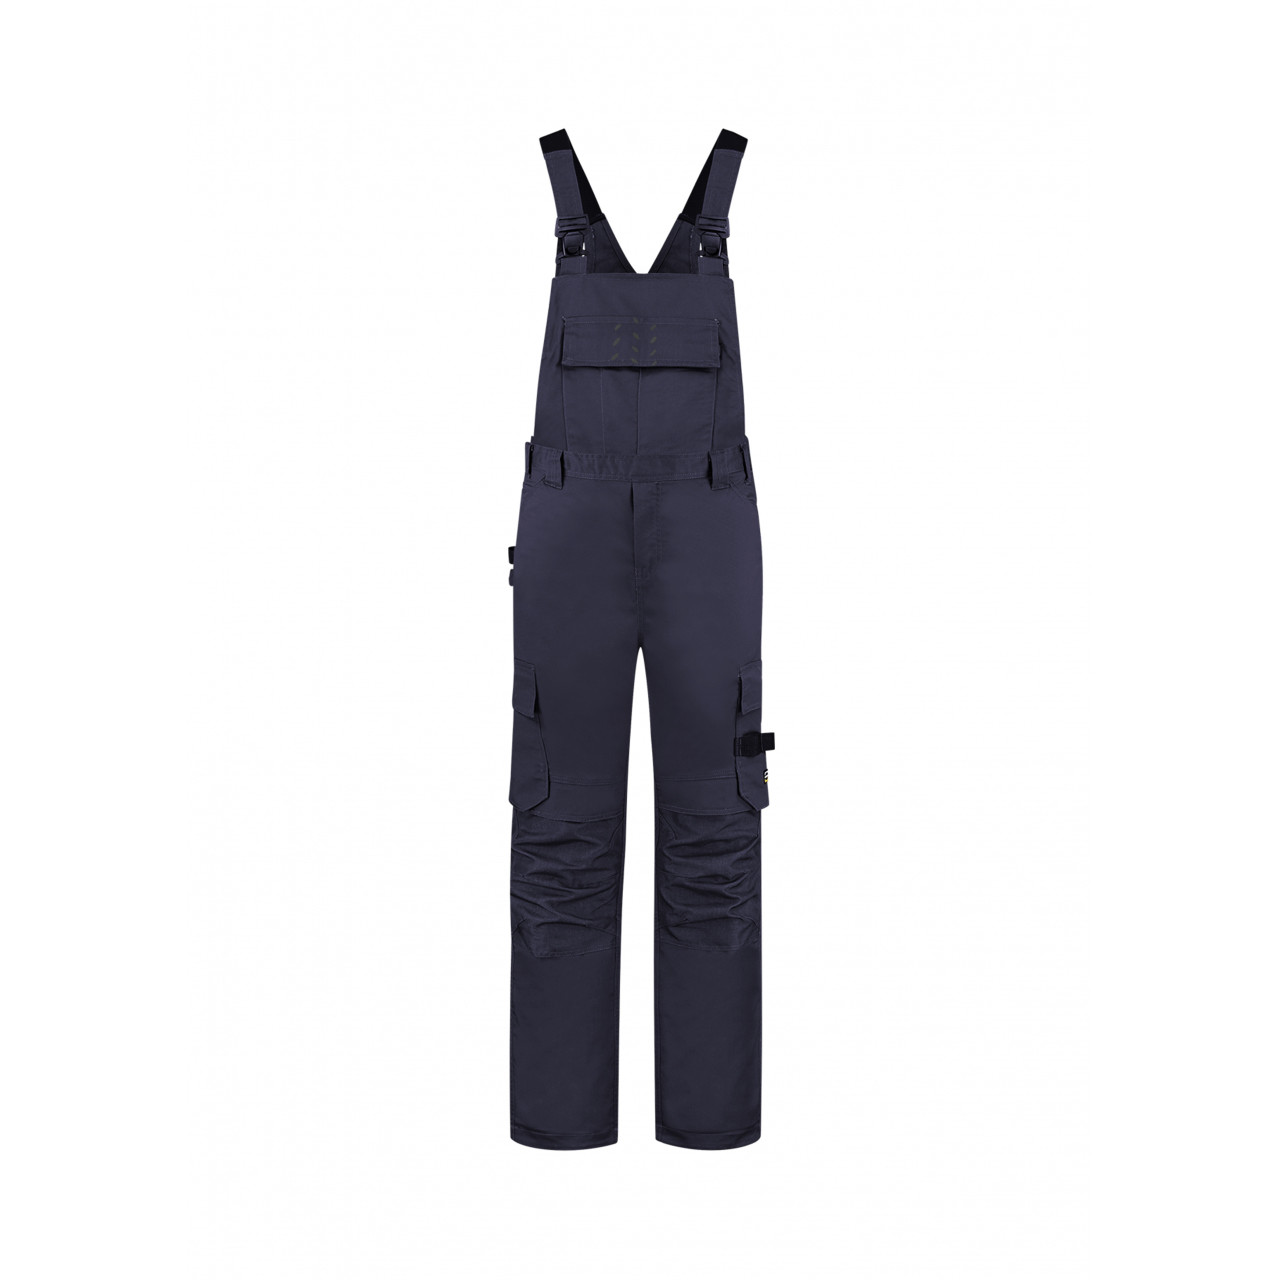 Pracovní kalhoty laclové Tricorp Bib&Brace Twill Cordura - tmavě modré, 44